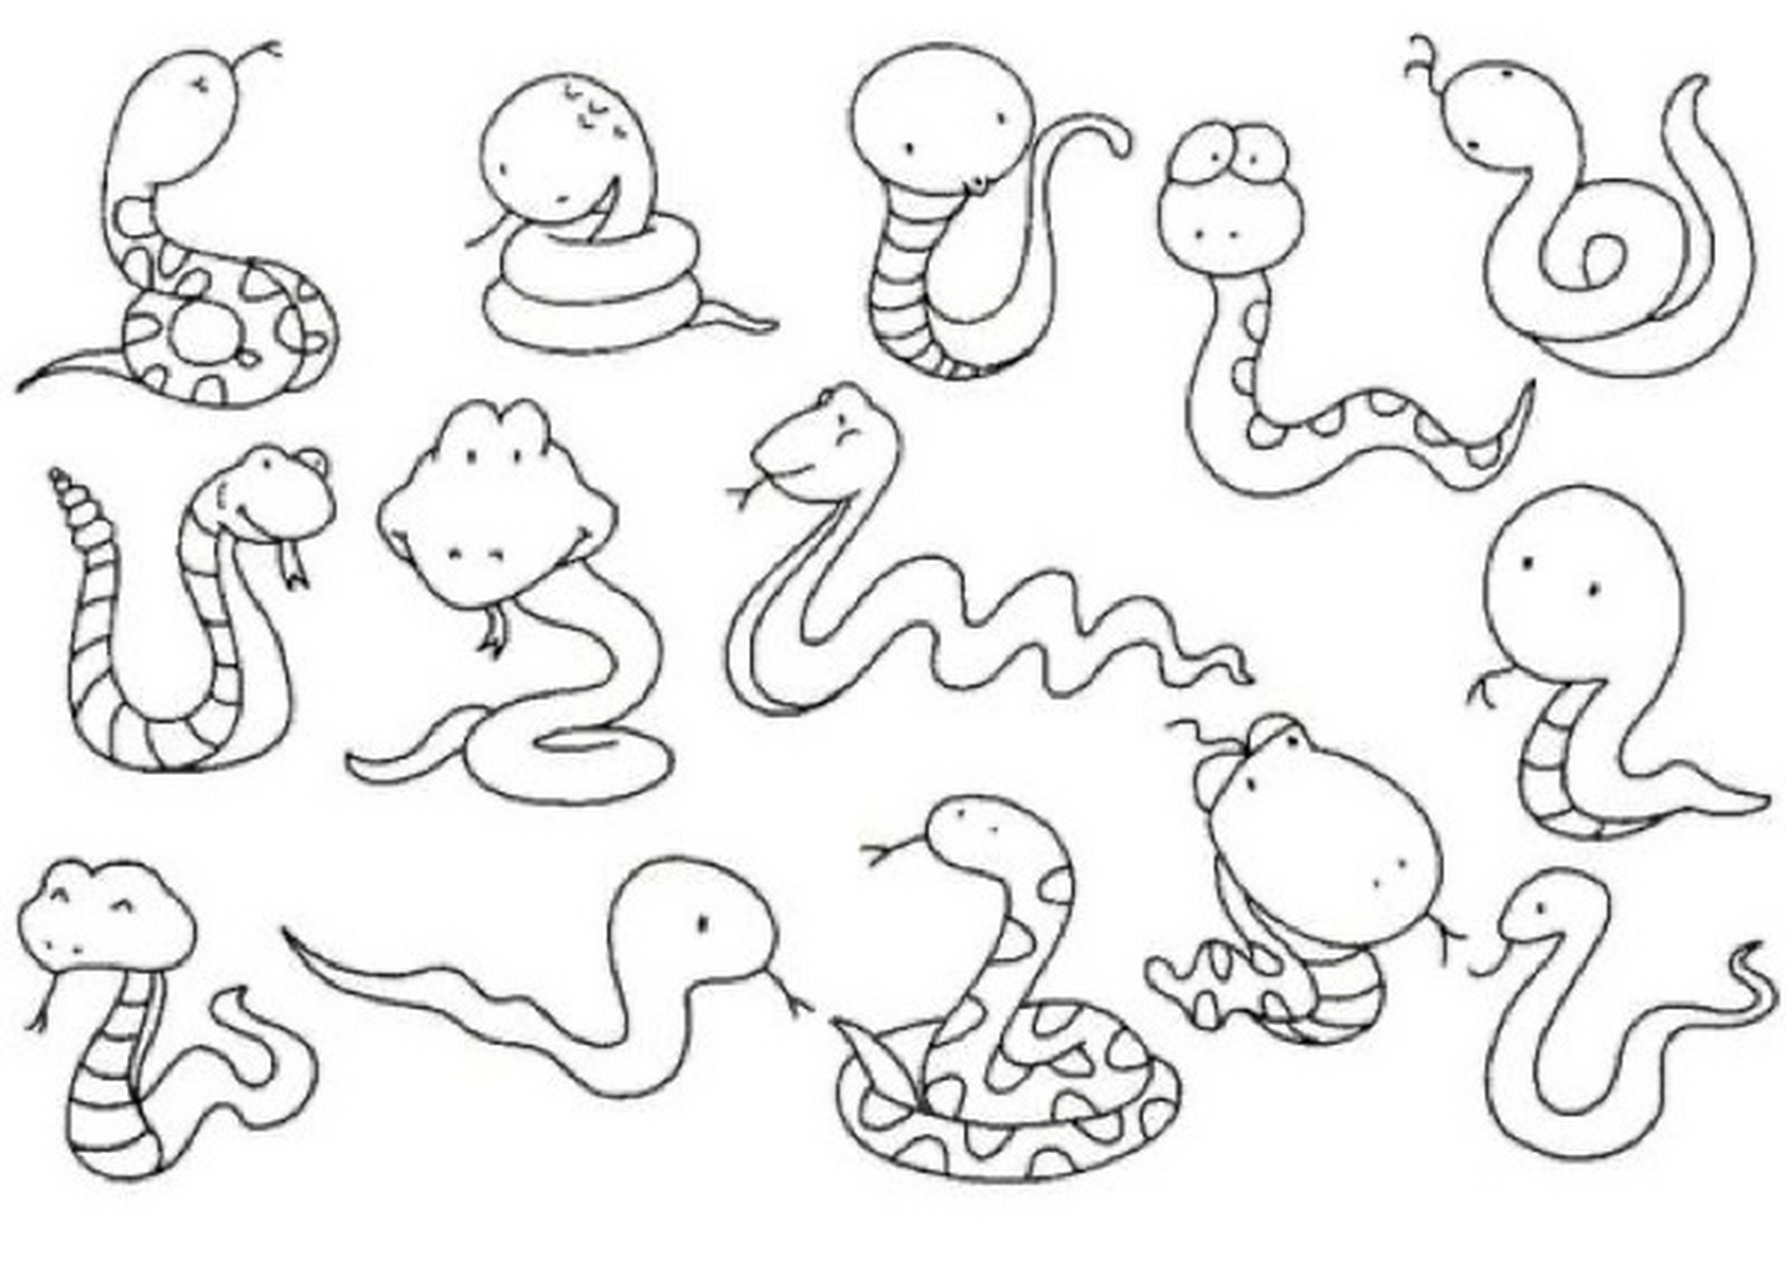 蛇的画法儿童画图片